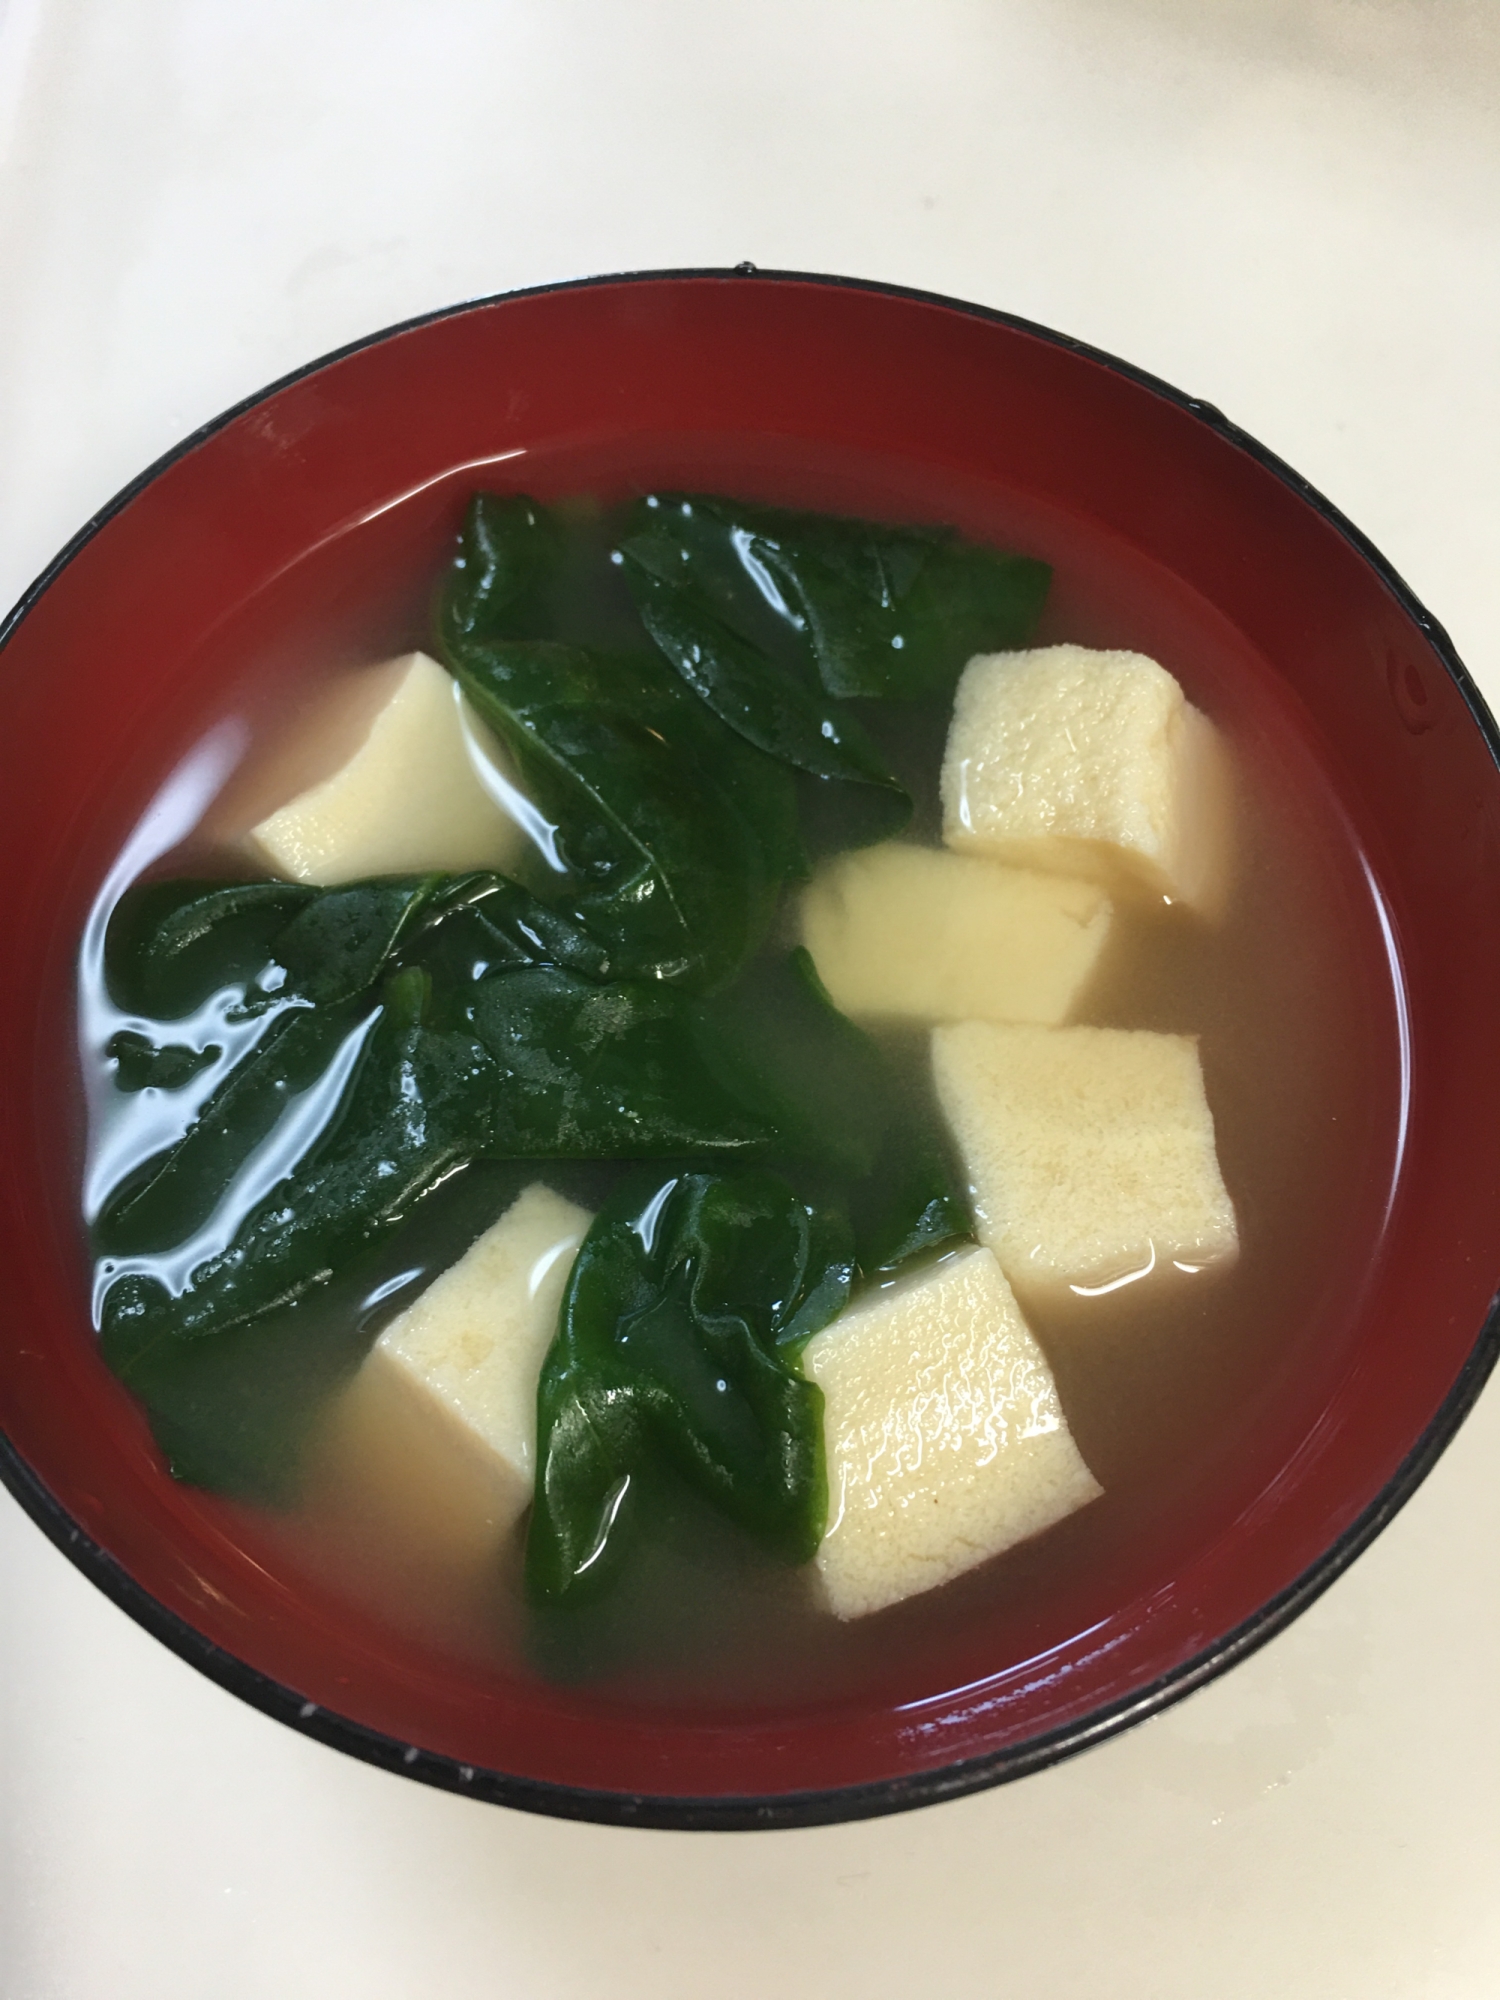 栄養たっぷり⭐おかわかめと豆腐の生姜味噌汁